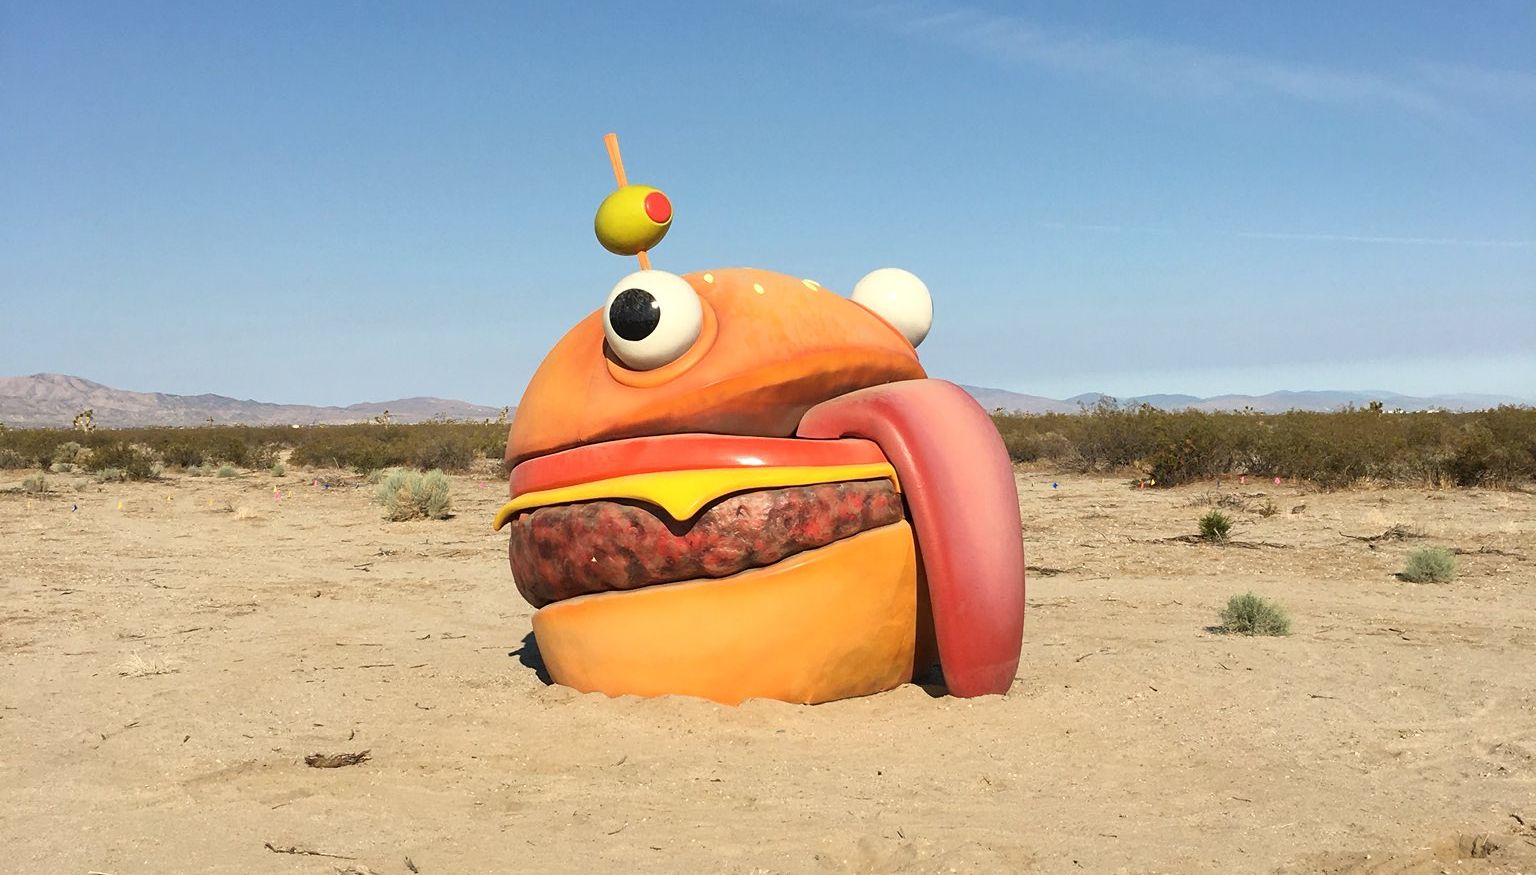 Durrr Burger from Fortnite appears in the desert by Sela Shiloni